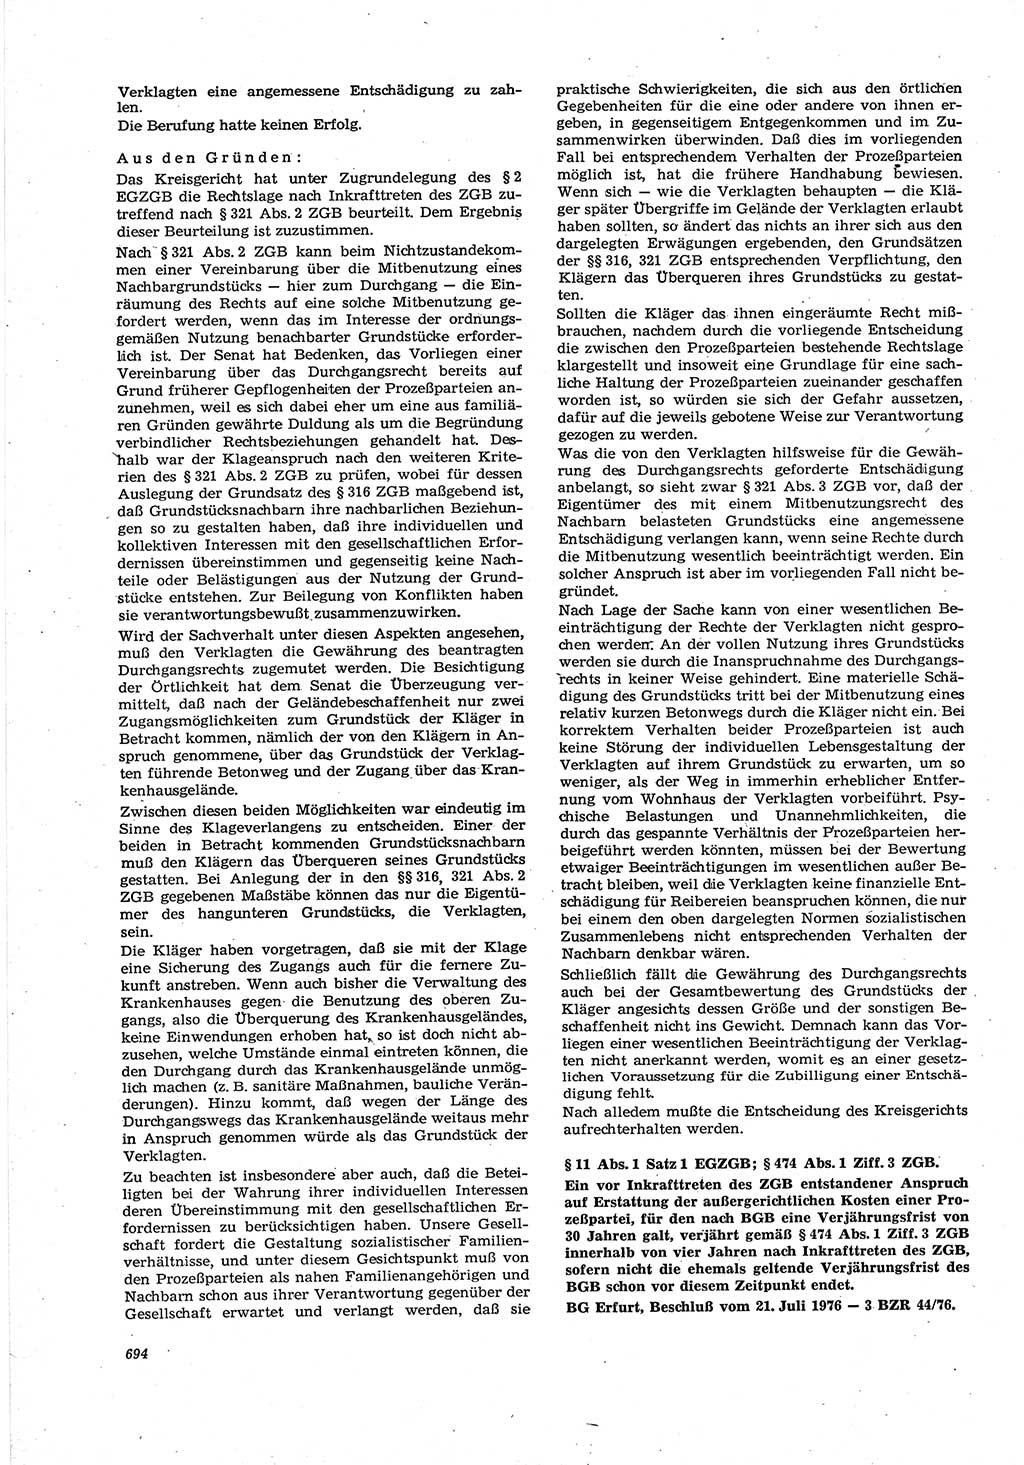 Neue Justiz (NJ), Zeitschrift für Recht und Rechtswissenschaft [Deutsche Demokratische Republik (DDR)], 30. Jahrgang 1976, Seite 694 (NJ DDR 1976, S. 694)